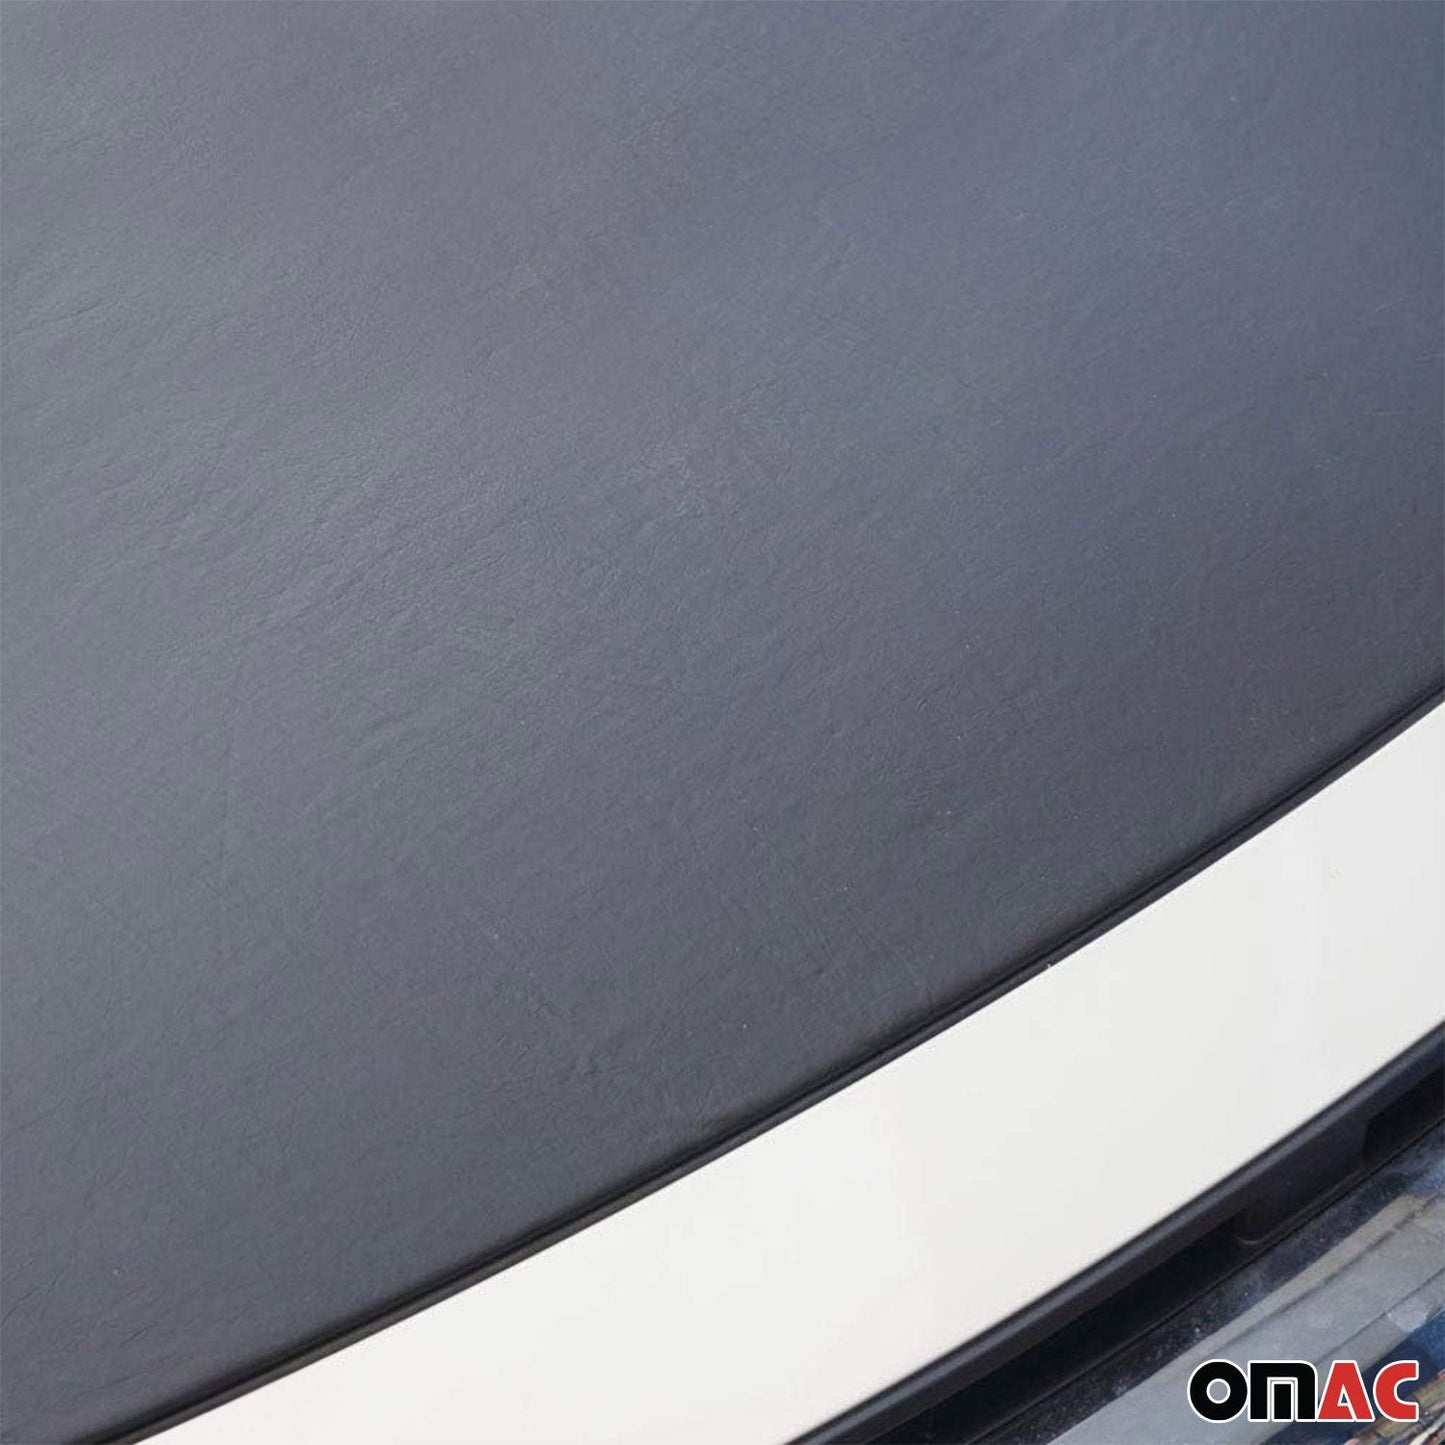 OMAC Car Bonnet Mask Hood Bra for Mercedes Sprinter W906 2010-2018 Black Full Cover 4724BSZ2-1